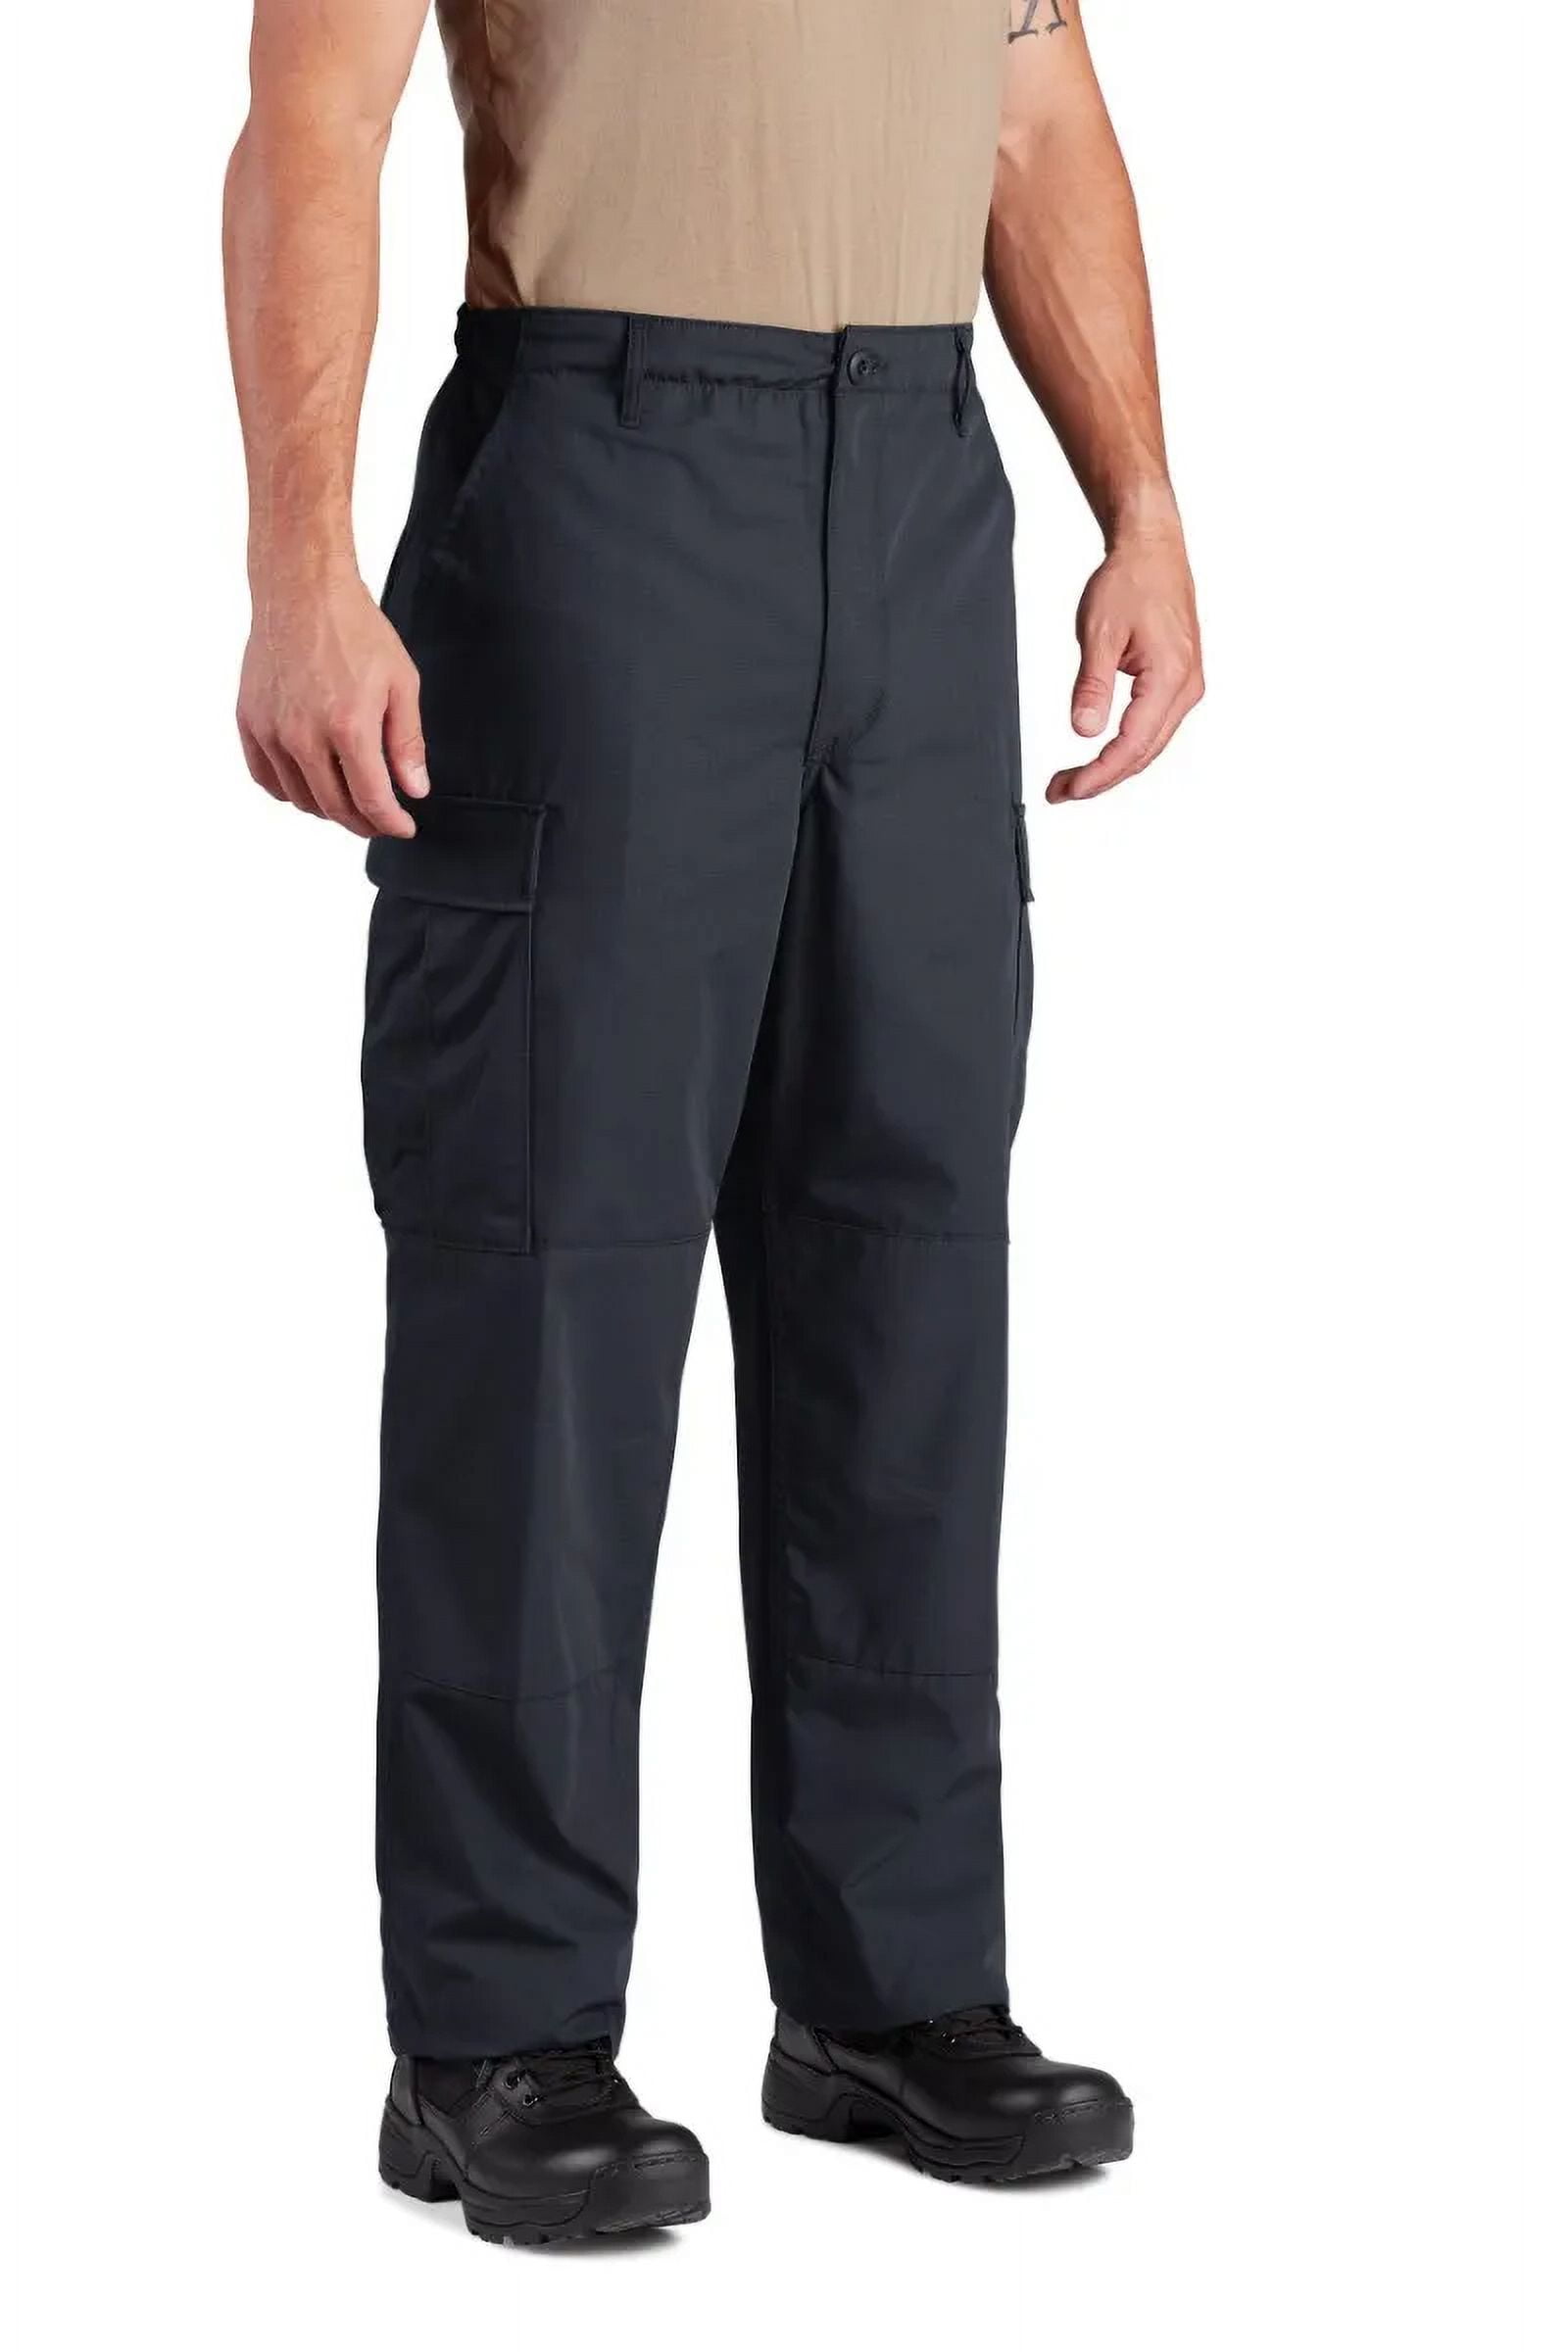 Propper Uniform BDU Trouser- LAPD Navy- M- L - Walmart.com